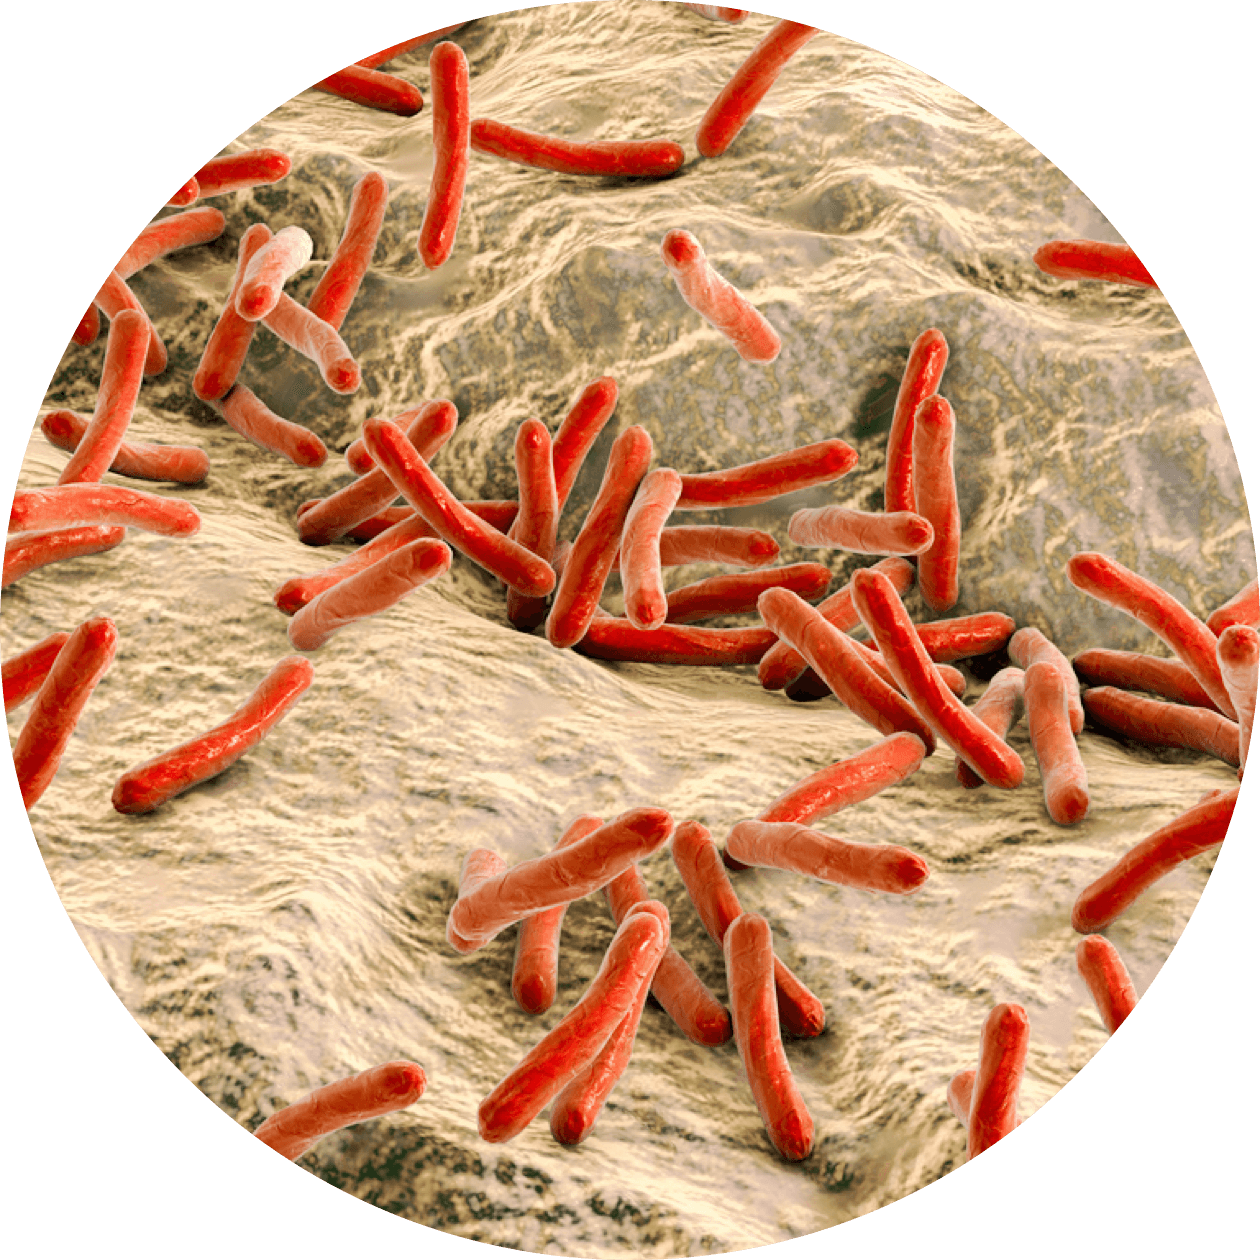 Tuberculosis image circular